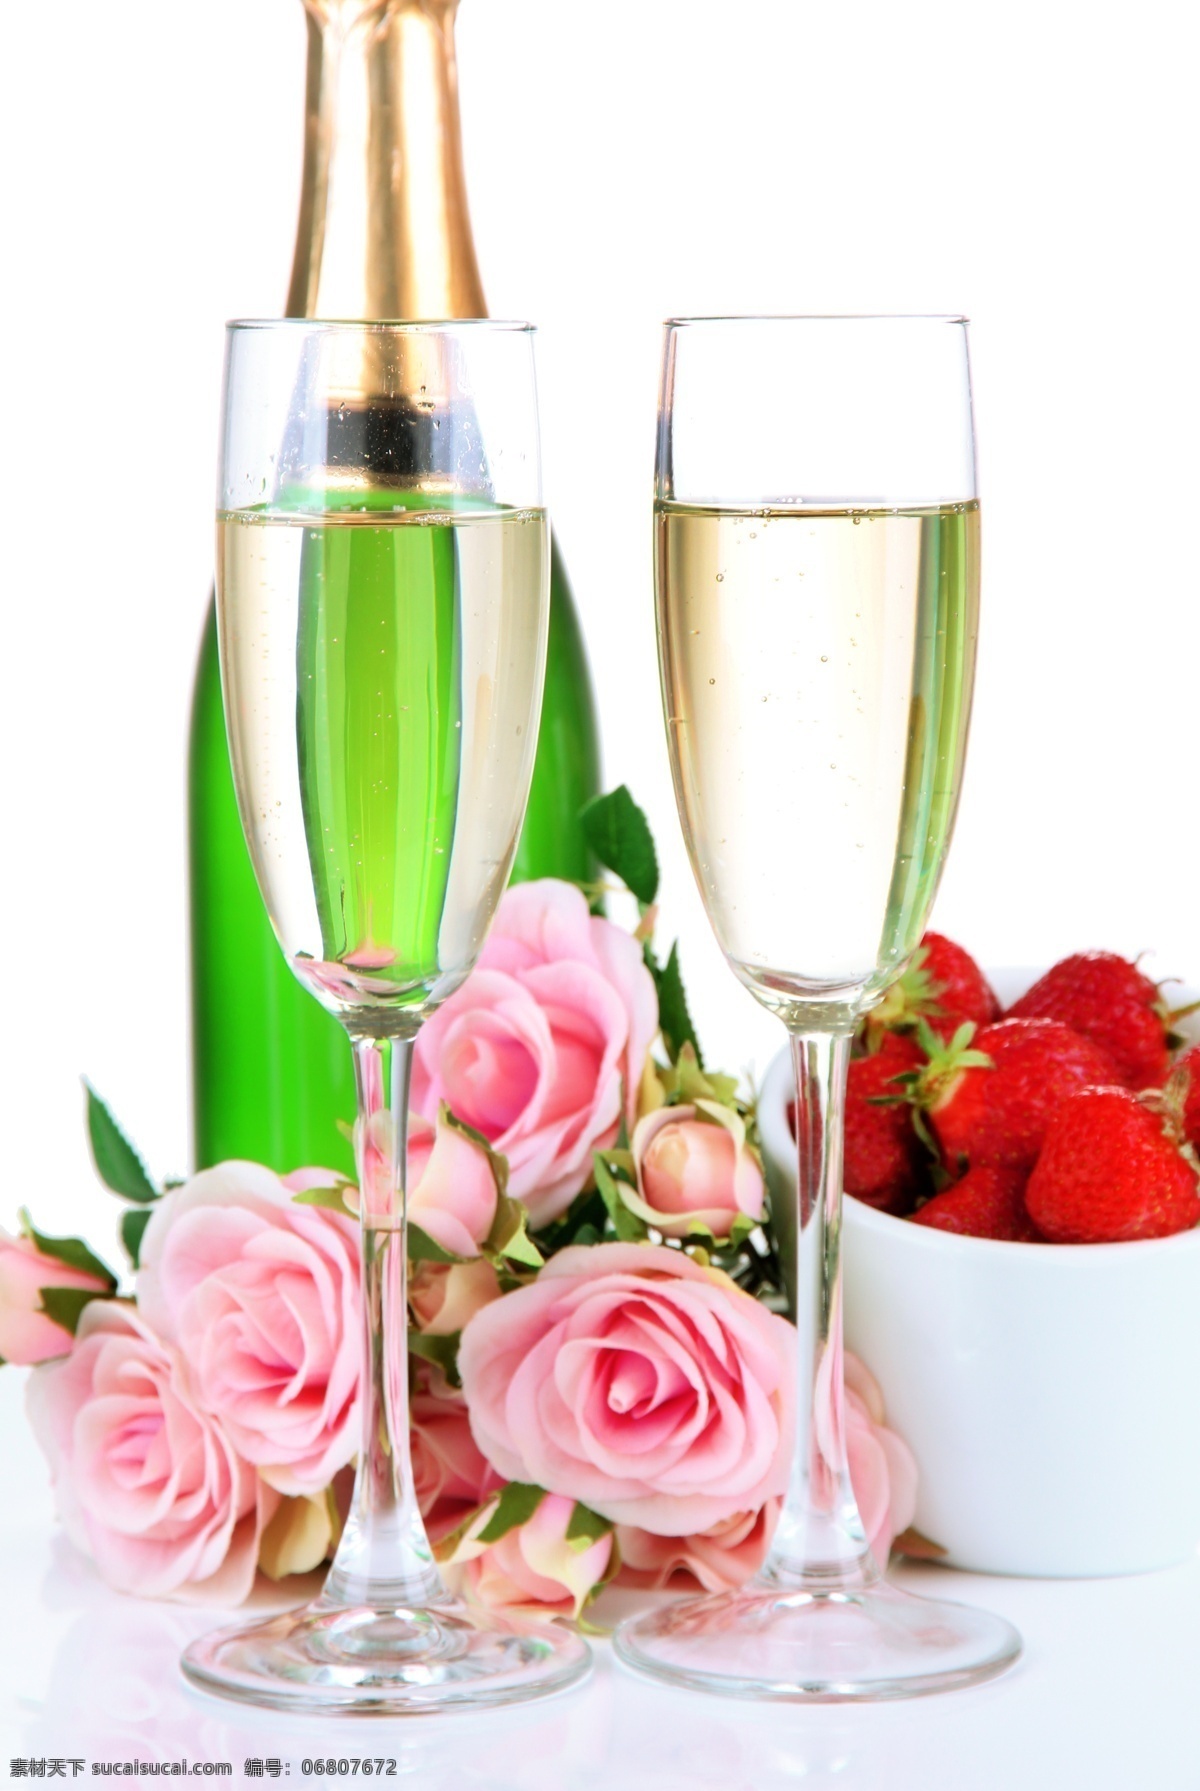 杯中的酒 高脚杯 酒 玫瑰花 玻璃器皿 草莓 美食 诱人 食物素材 酒水饮料 餐饮美食 白色